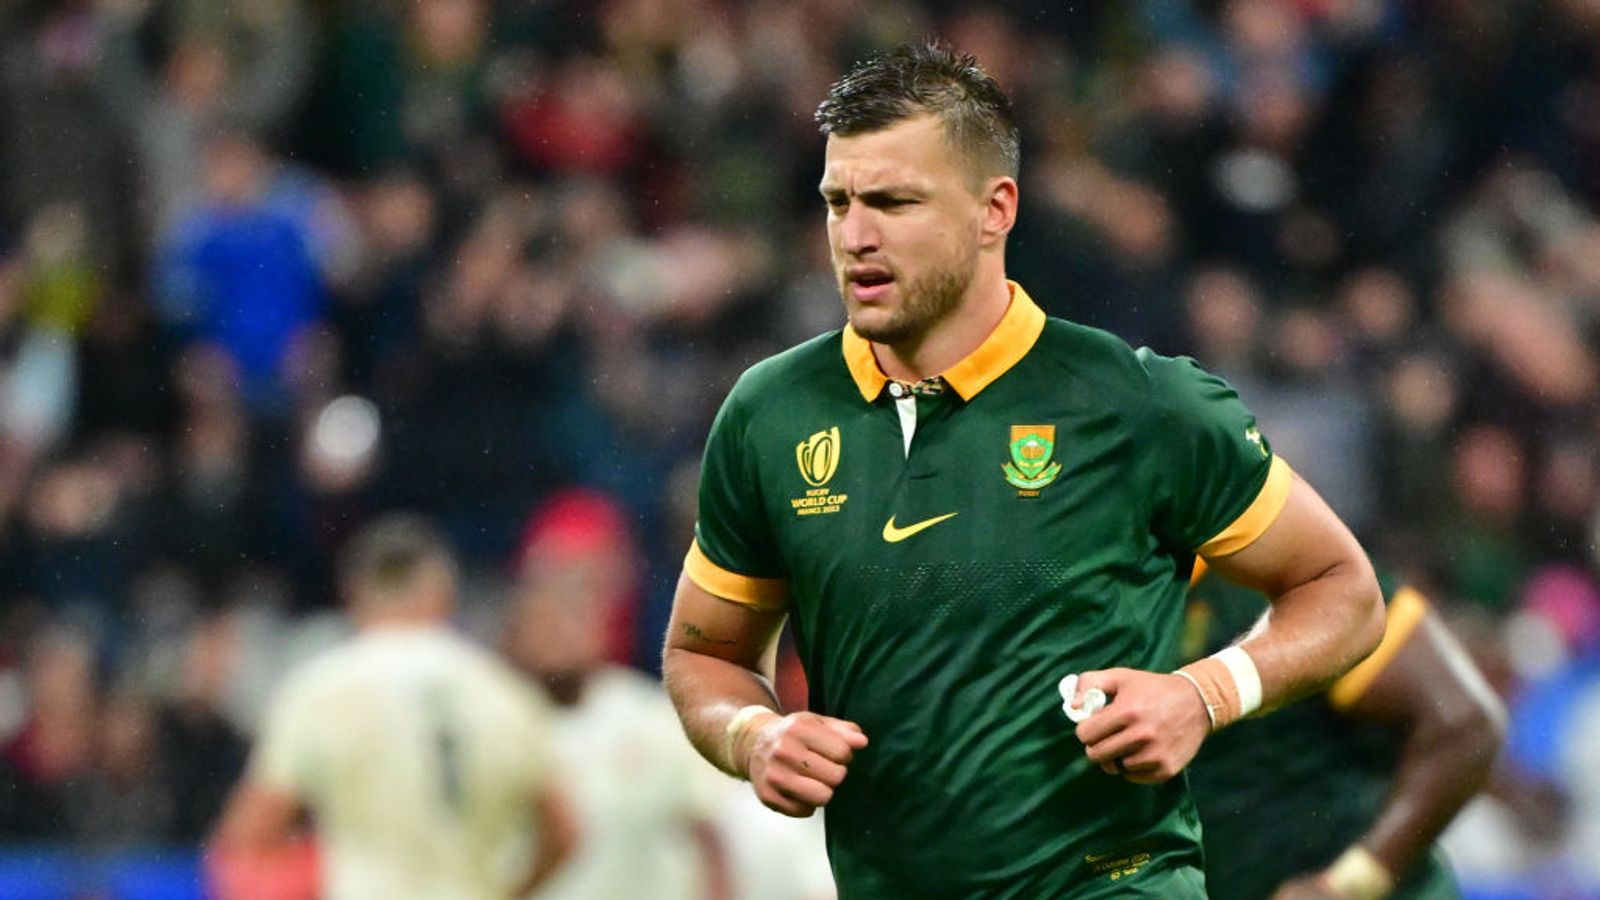 Finale de la Coupe du Monde de Rugby : Faf de Klerk et Handre Pollard débutent pour l’Afrique du Sud contre la Nouvelle-Zélande, qui fait appel à Brodie Retallick |  Actualités du rugby à XV